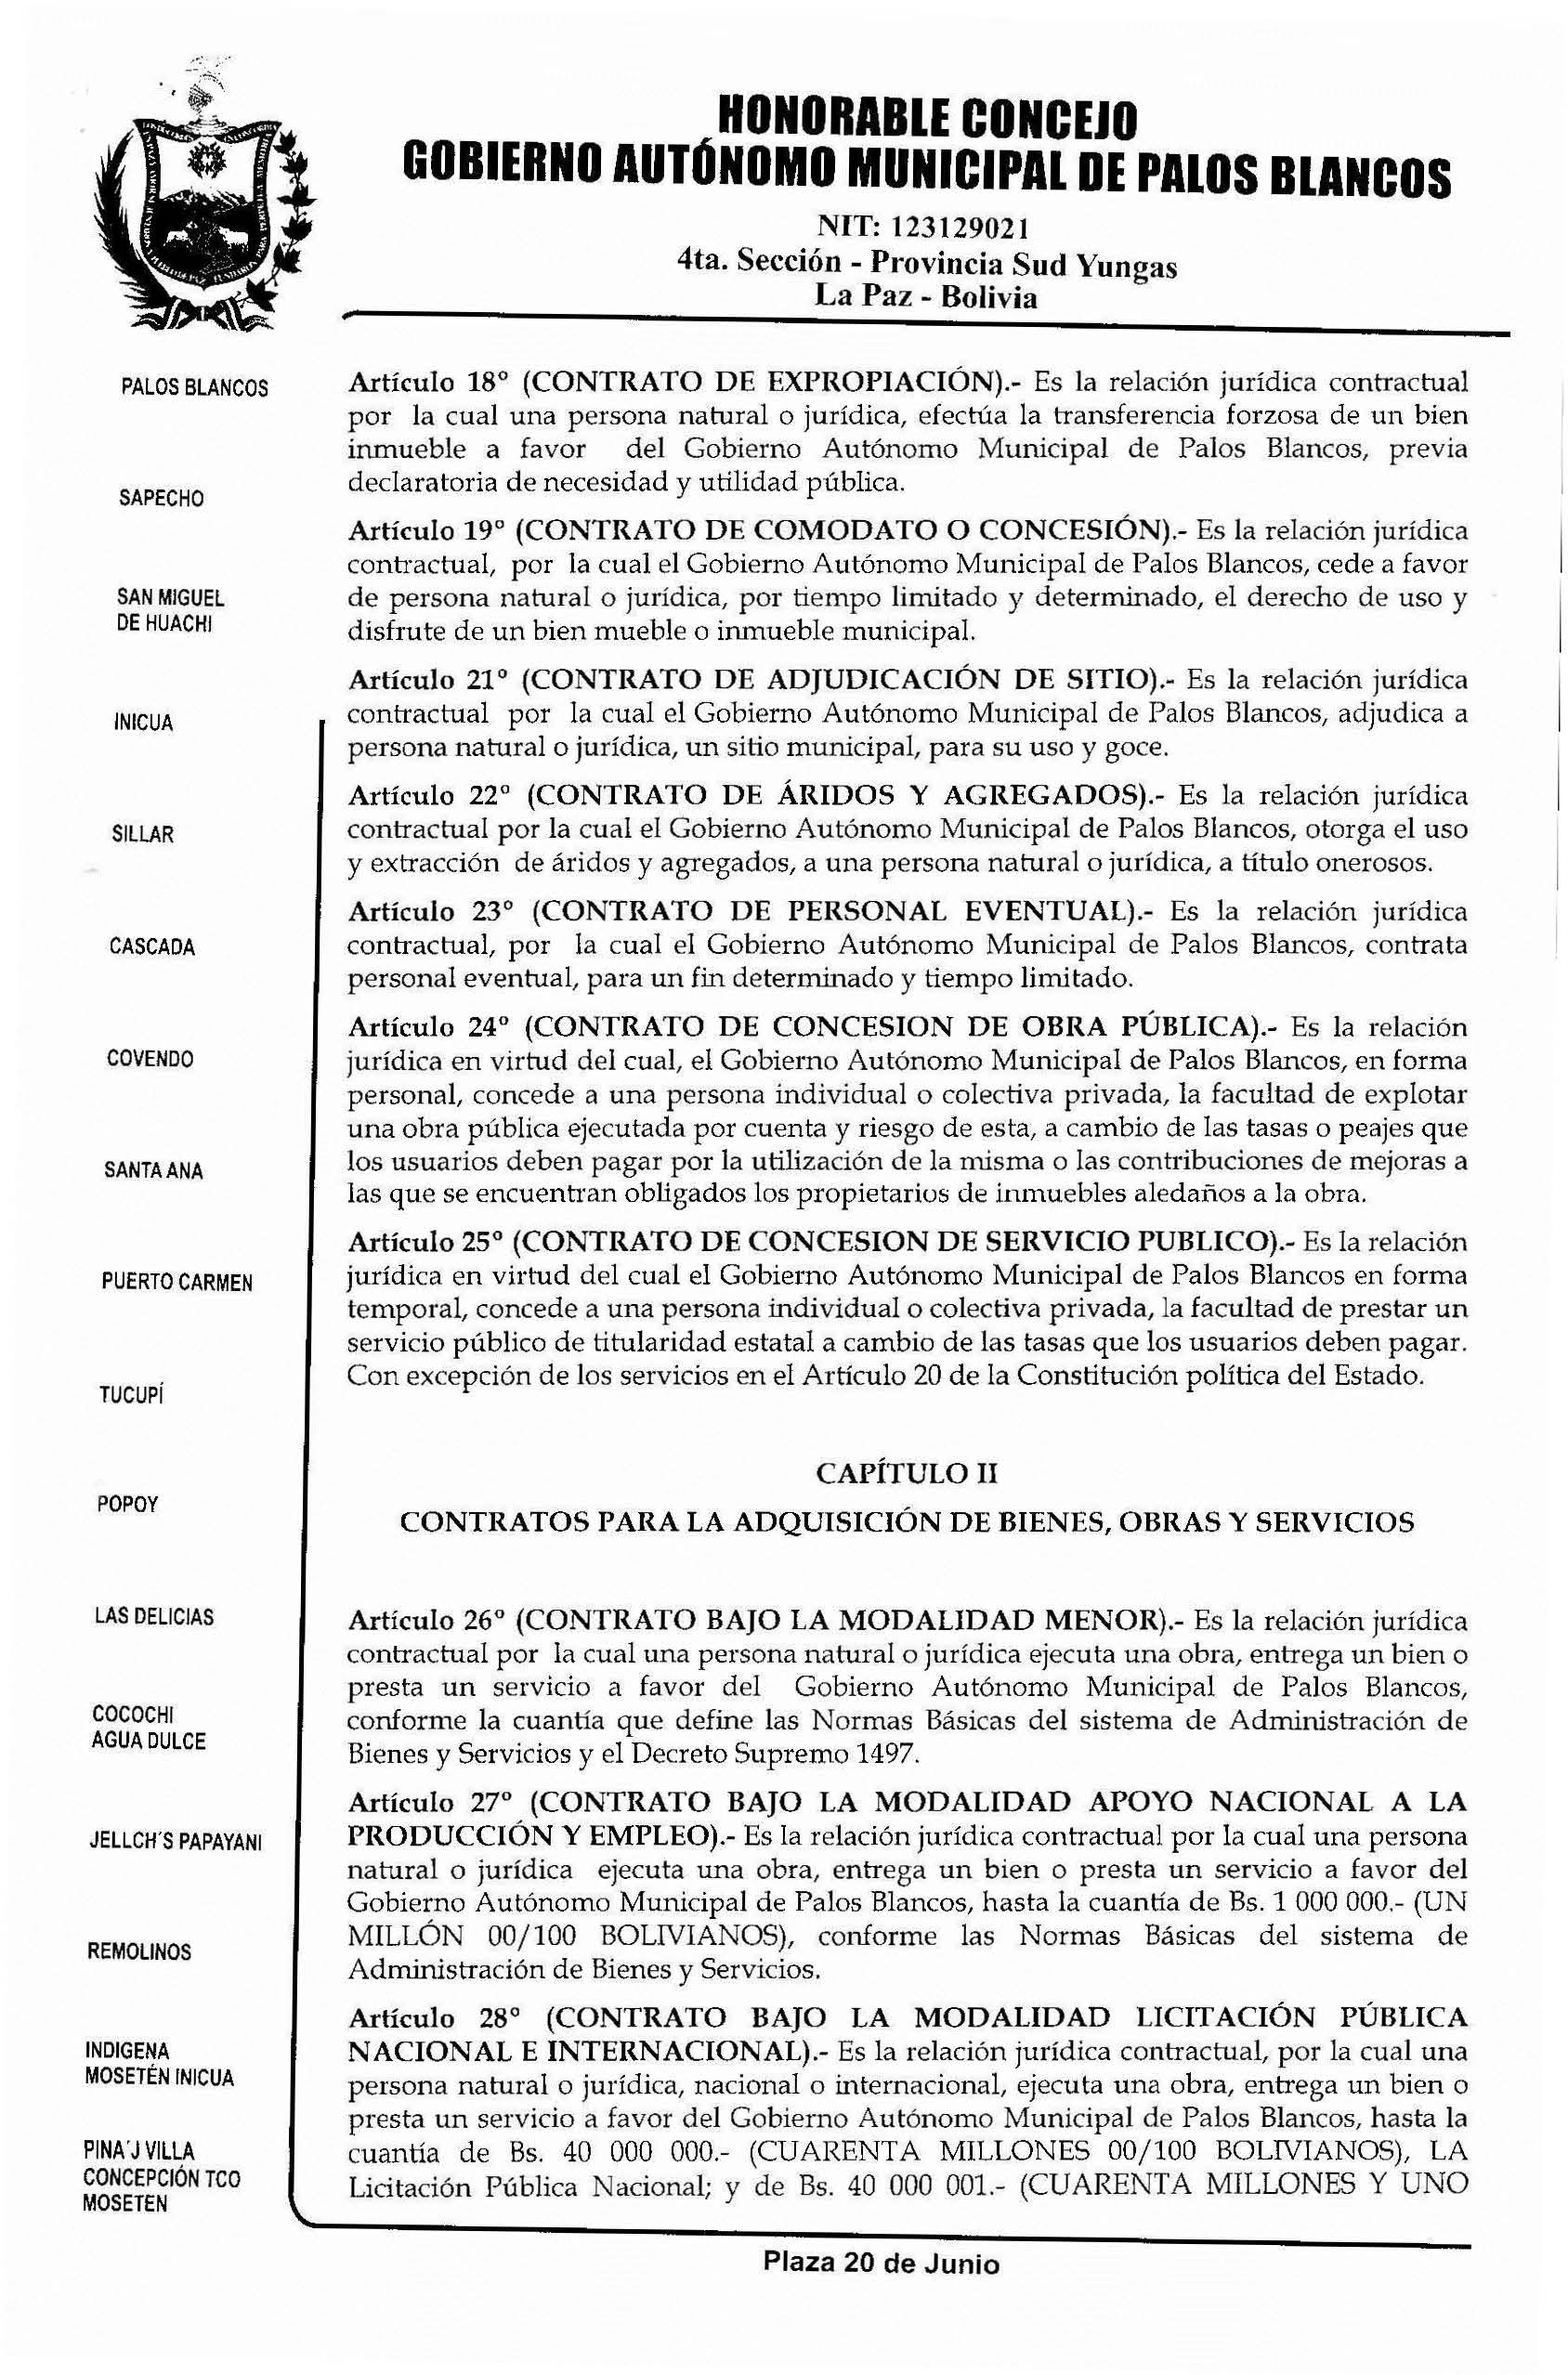 HONORABlE CONCEJO Artículo 18 (CONTRATO DE EXPROPIACIÓN).